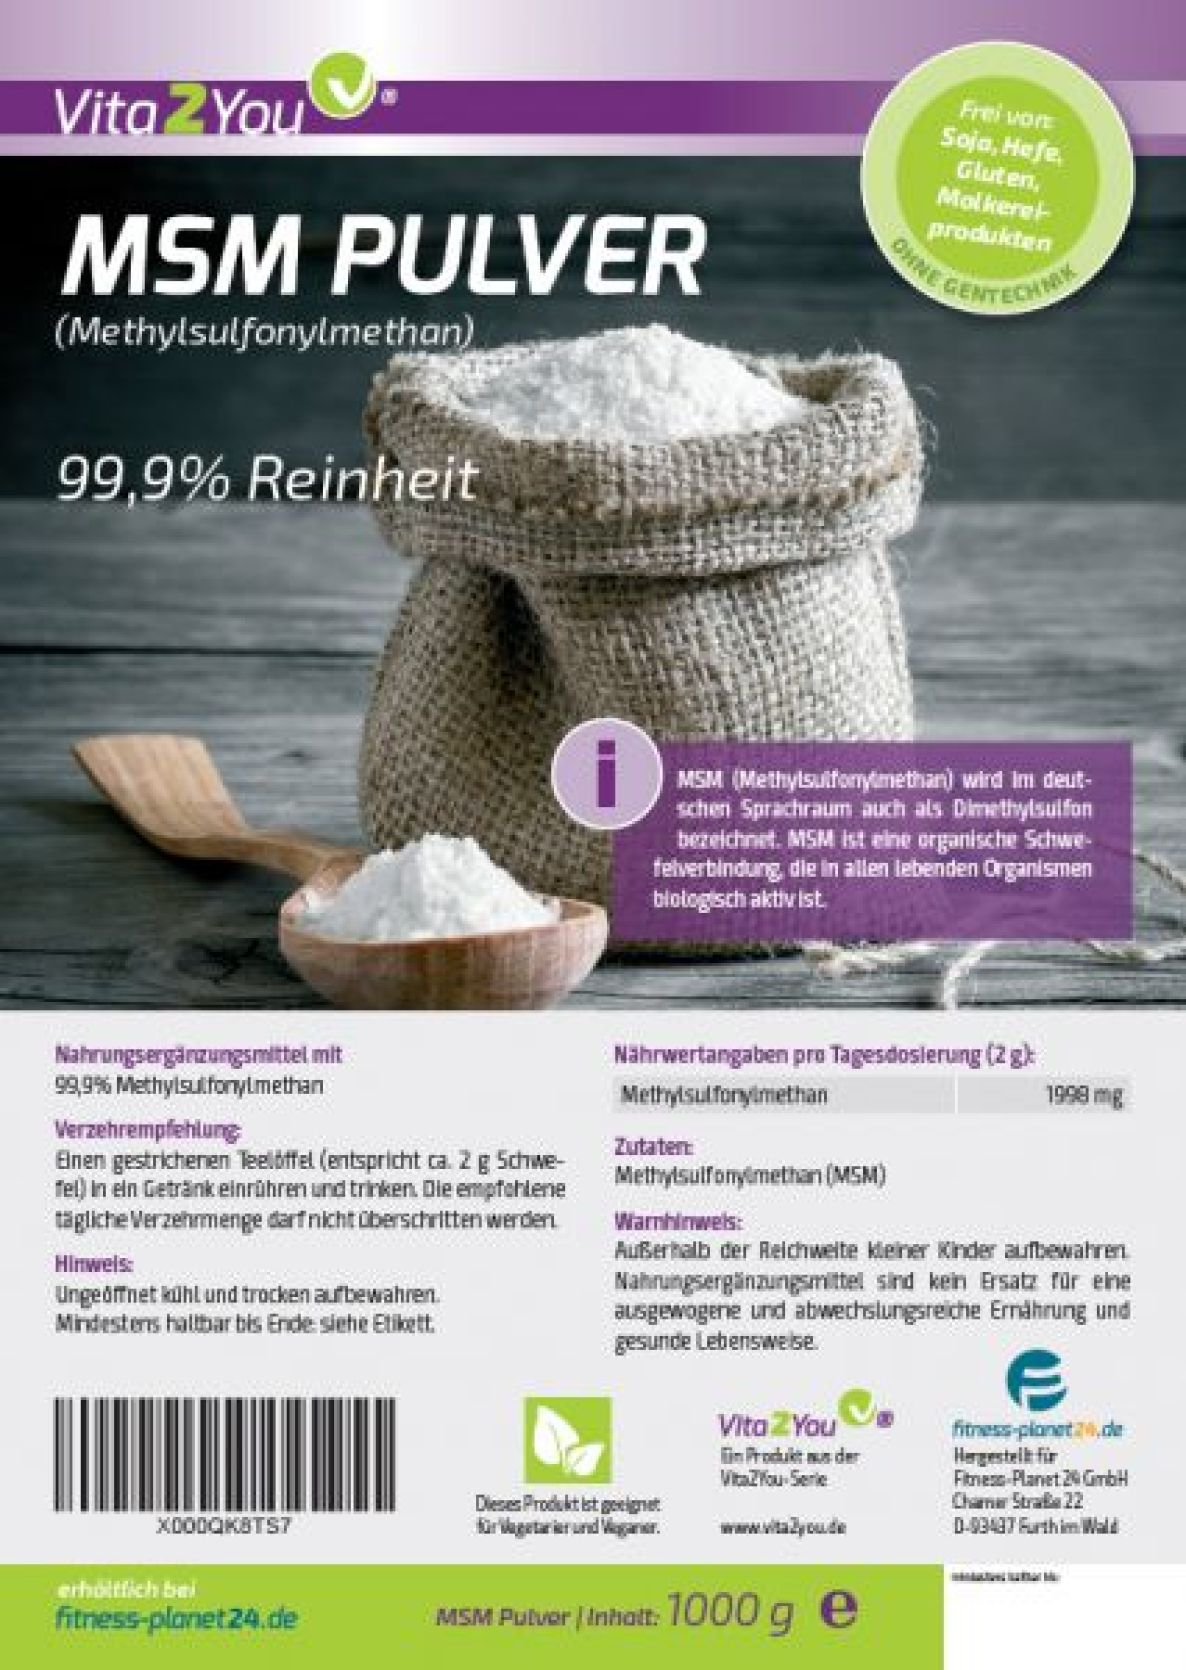 Methylsulfonylmethan Schwefel Vita2You MSM Pulver 1000g - - 99,9% Reinheit 